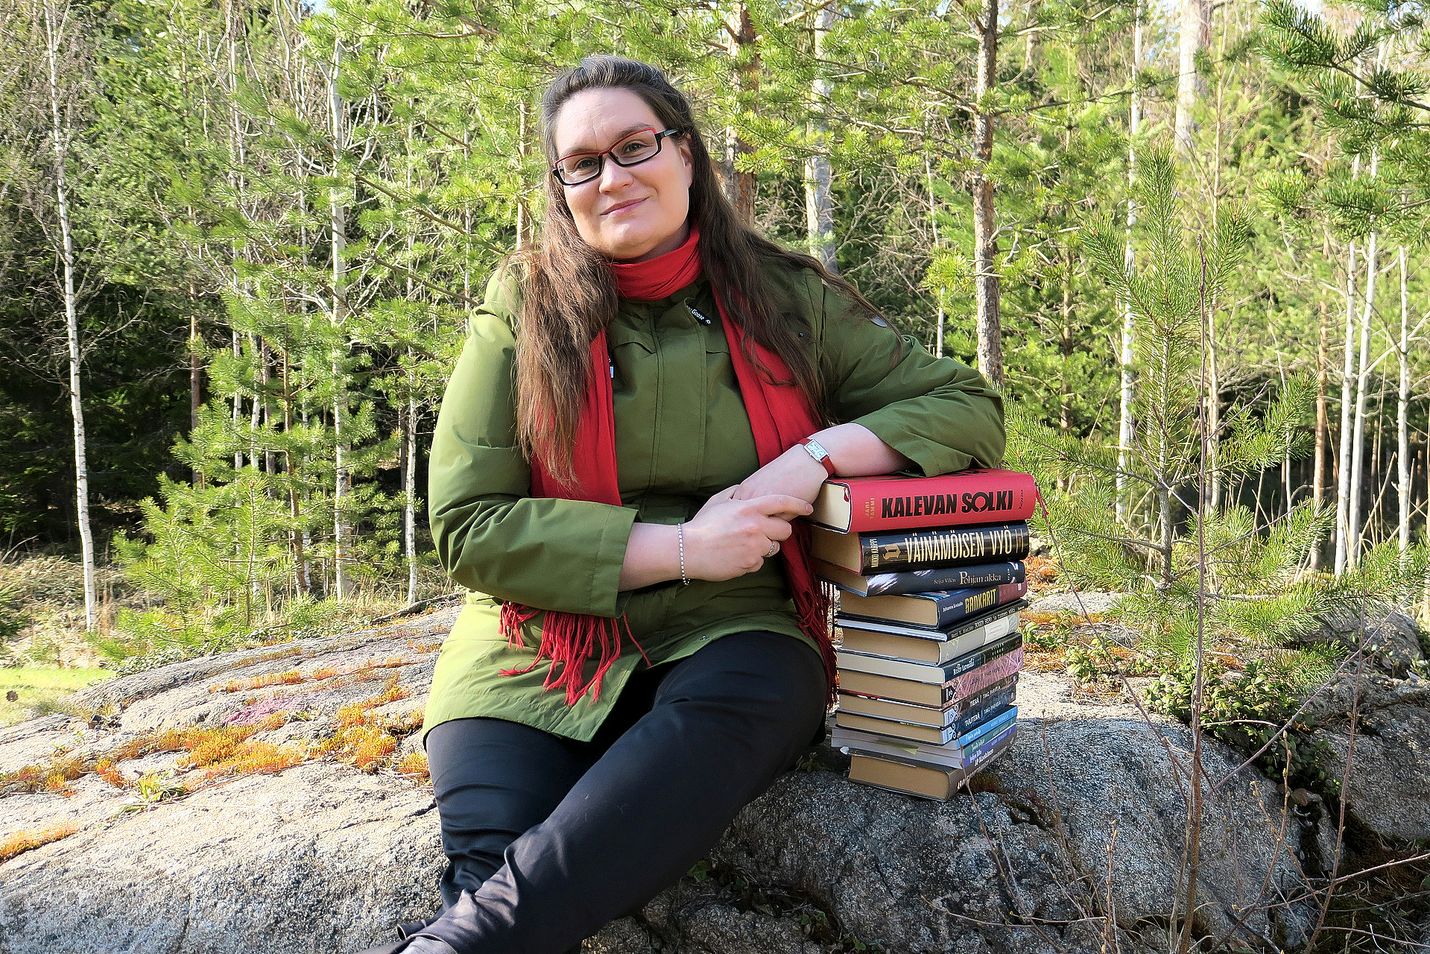 Elli-Mari Aholan mukaan tutkimuksen aineistona olevista Kalevala-muunnelmista yksikään ei vaadi Kalevala-tietämystä ollakseen lukijalle kiinnostava. Väitöskirjan tekeminen kokopäiväisen toimittajan työn ohella oli pitkä projekti, joka alkoi vuonna 2016.
